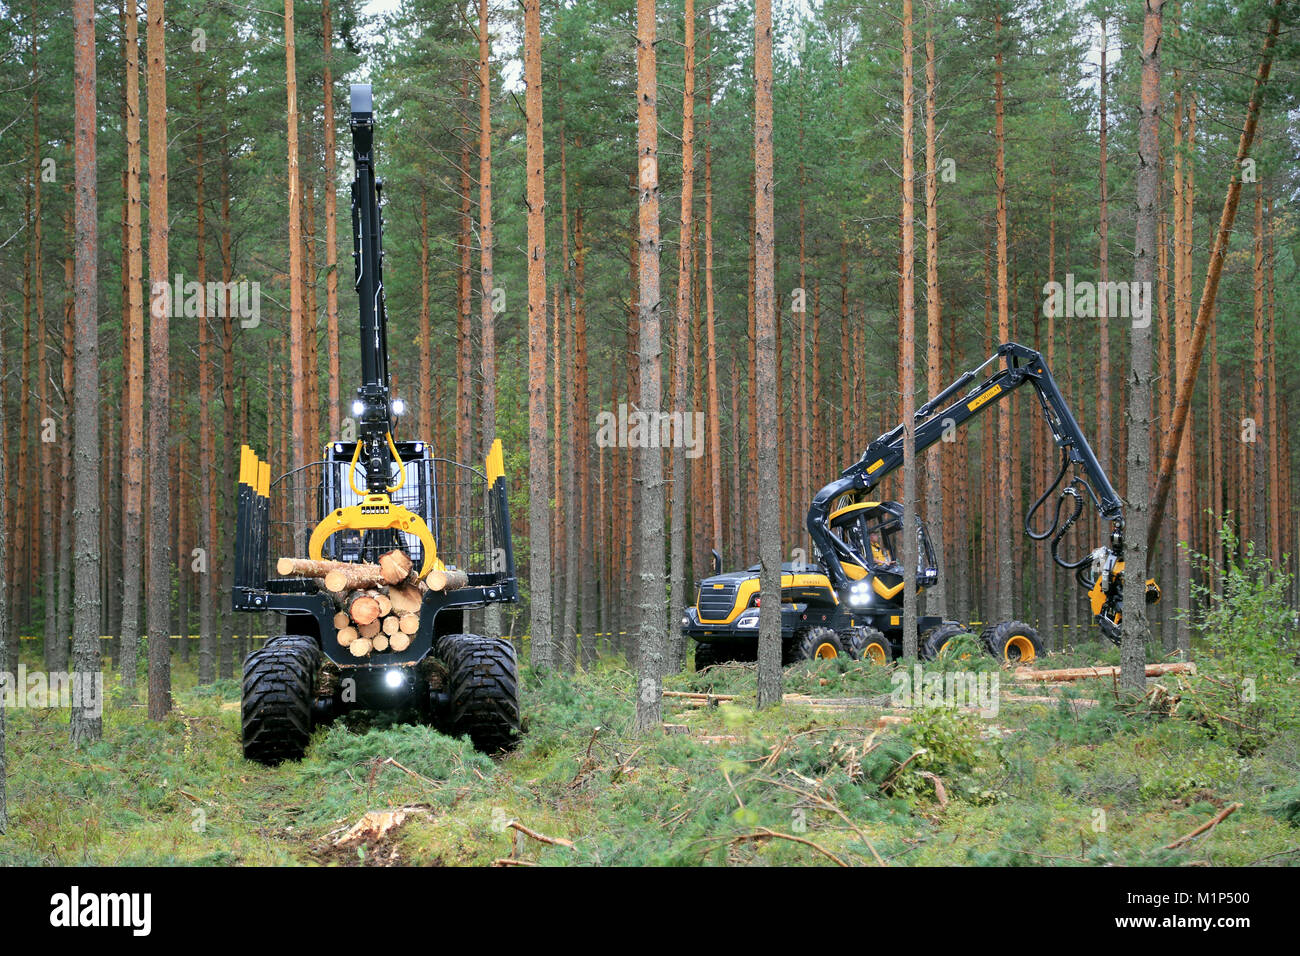 JAMSA, Finlandia - 30 agosto 2014: Ponsse Buffalo forwarder e harvester Scorpion in una demo di lavoro. Ponsse presenta il suo nuovo modello di serie 2015 in FinnMET Foto Stock